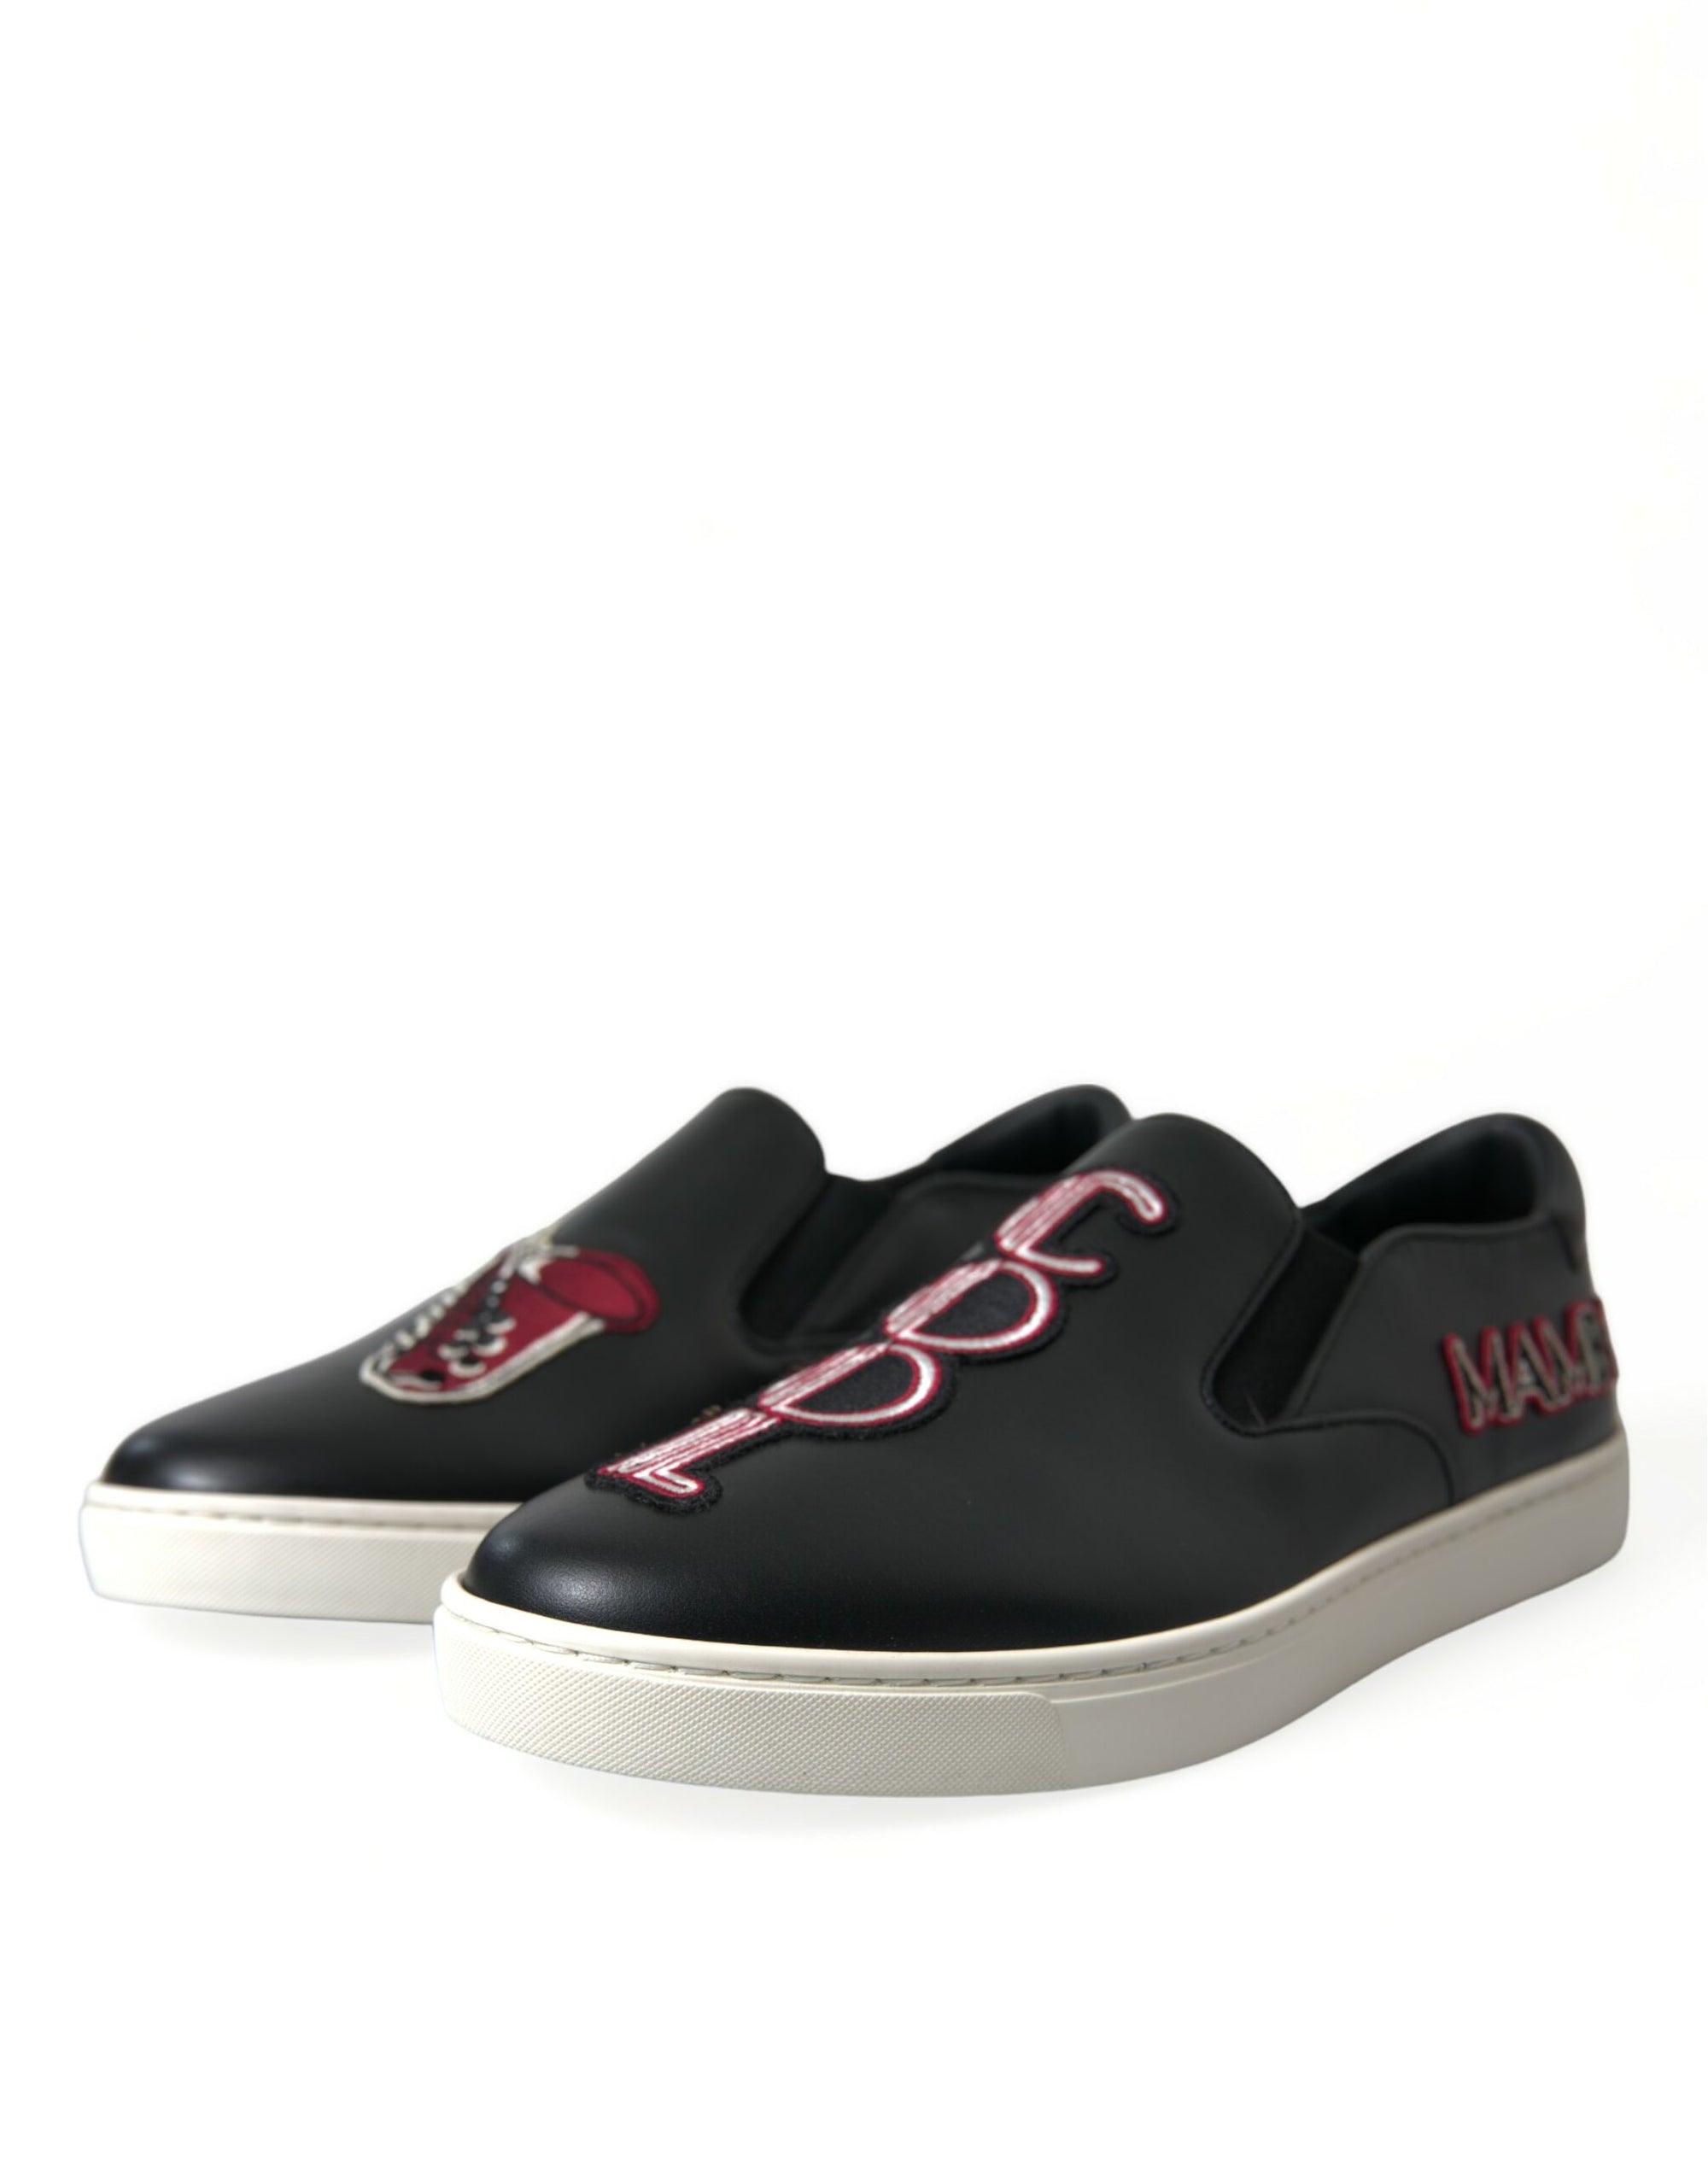 Elegant Black Slip-On Sneakers